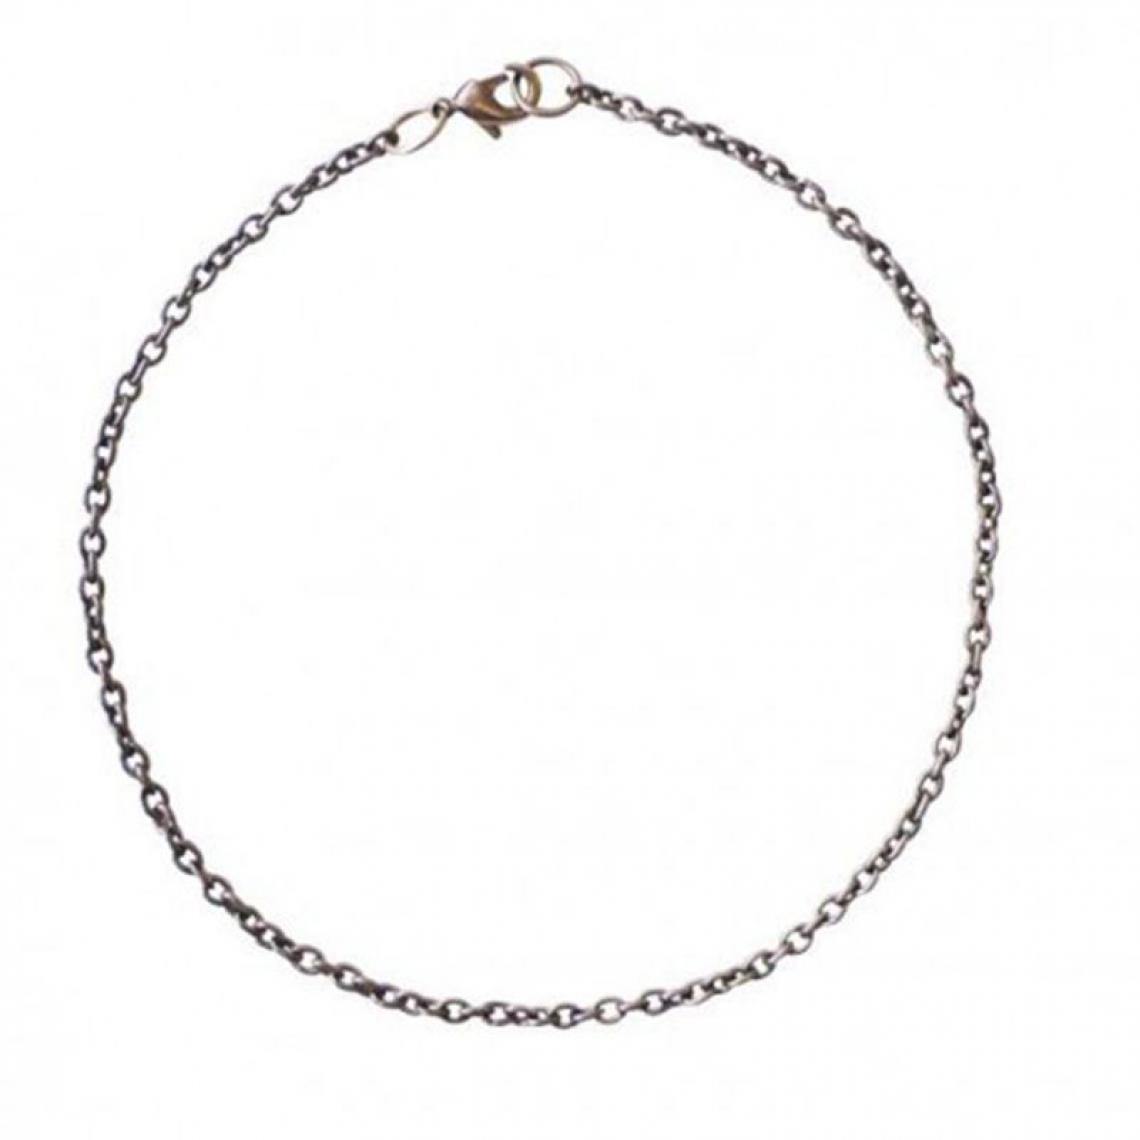 Graines Creatives - Chaîne de bracelet argenté - 20 cm x 2 mm - Perles